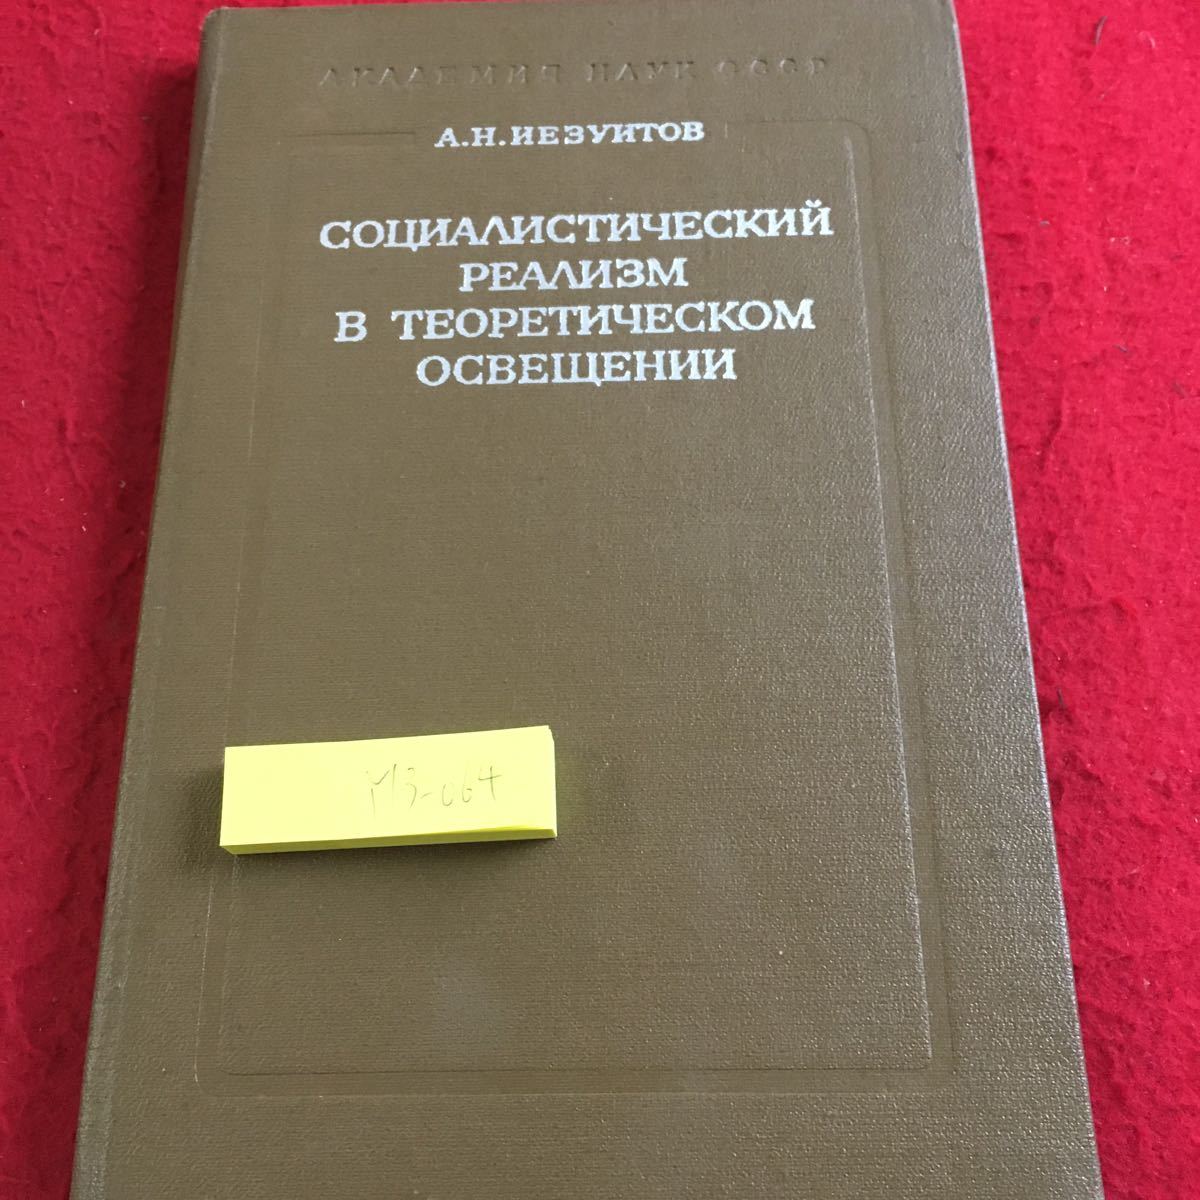 Y13-064 理論的照明における社会主義リアリズム 1975年発行 ロシア・ソビエト・社会主義_傷あり